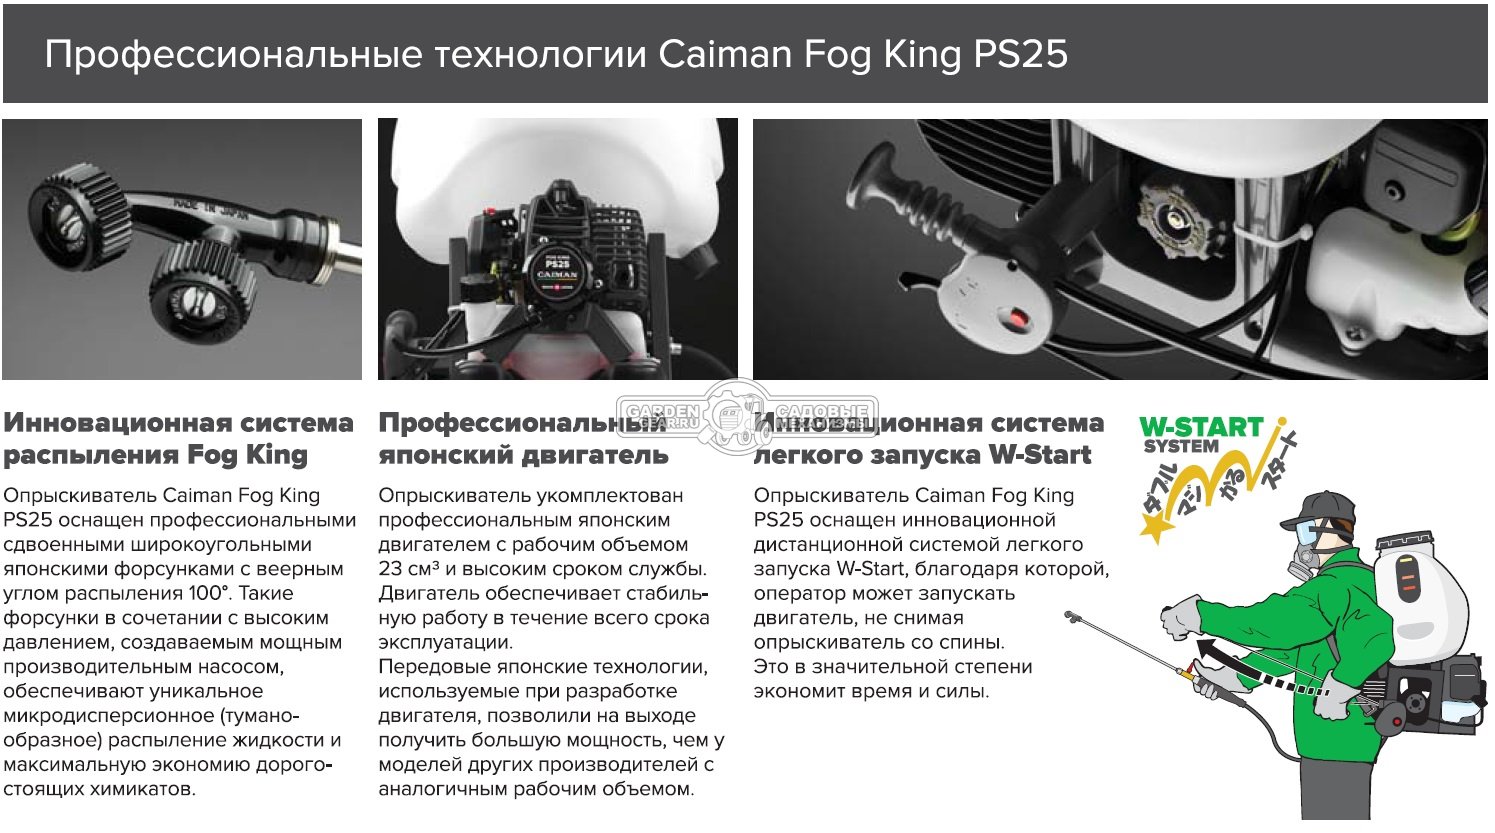 Опрыскиватель бензиновый Caiman Fog King PS25 (JPN, распыление давлением, Maruyama BE230P, 22,5 куб.см., 25 л., 35 бар, 8,8 кг.)